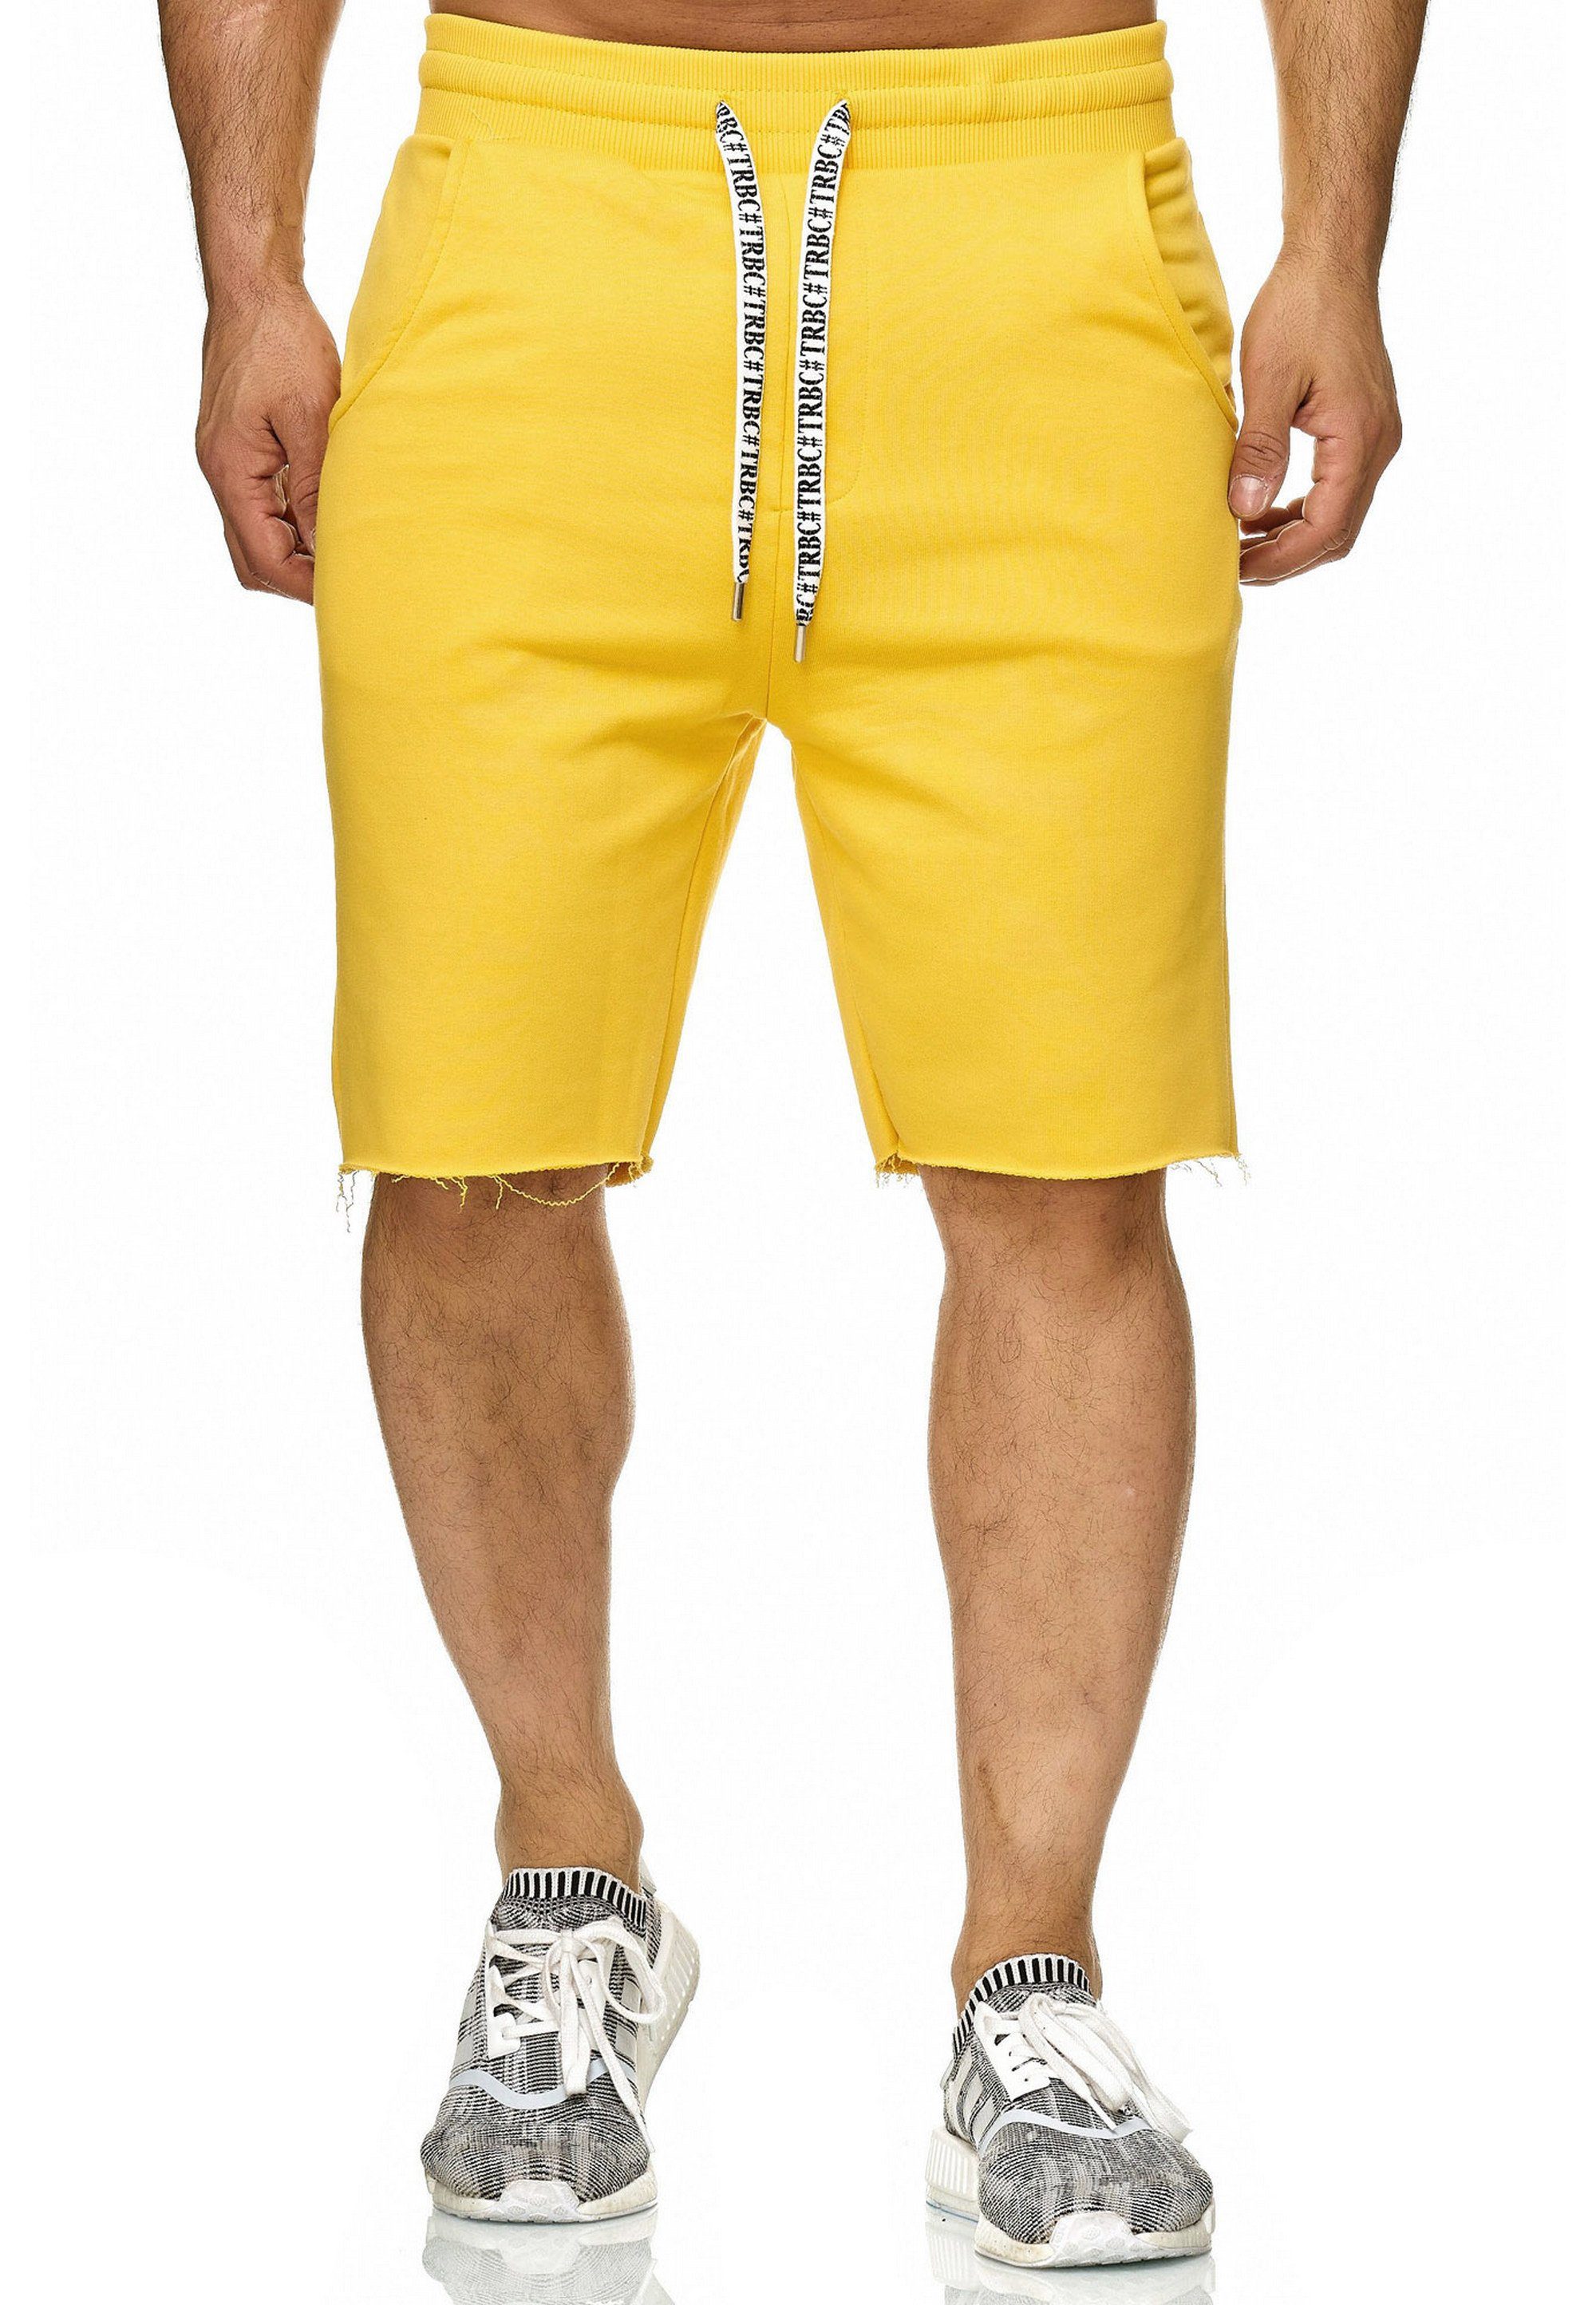 RedBridge Shorts Aurora mit breitem Saum gelb